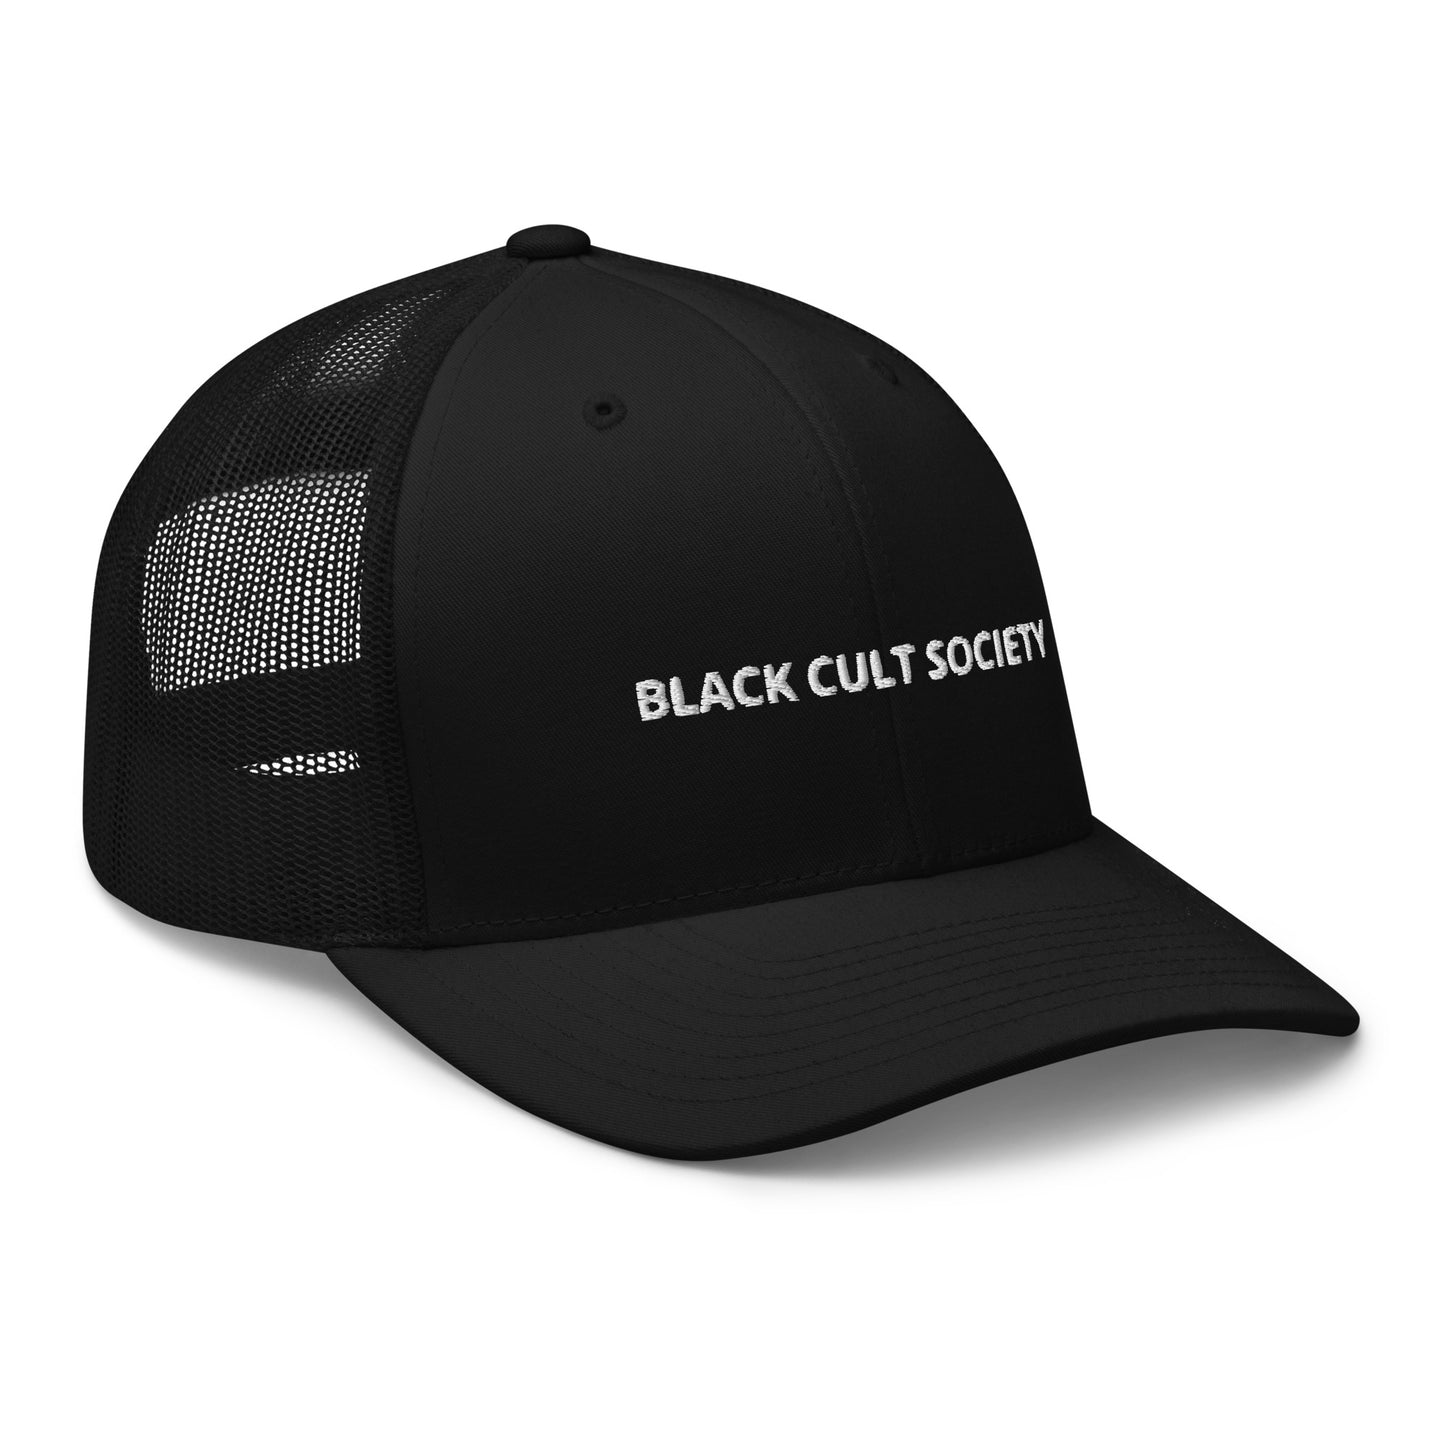 BLACK CULT SOCIETY Trucker Cap